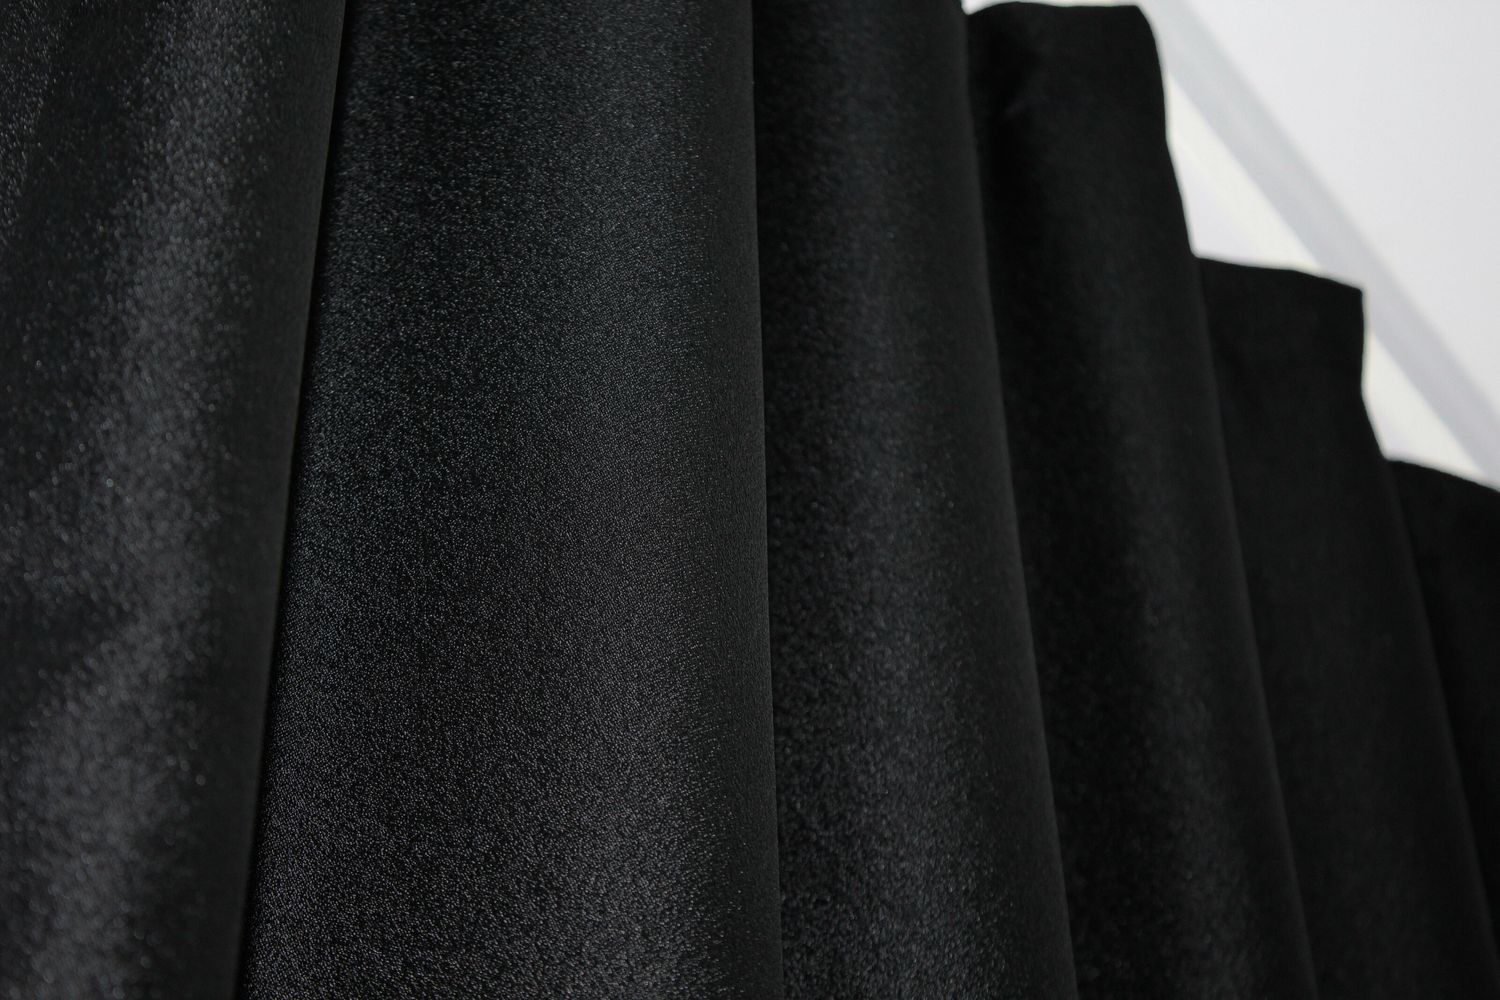 Шторы из ткани лен коллекции "ANZIO" цвет черный с серым 1307ш, Черный с серым, Комплект штор (2шт. 1,45х2,9м.), Классические, Без ламбрекена, Длинные, 1,45 м., 2,9 м., 145, 290, 2 - 3 м., Нет, Тесьма